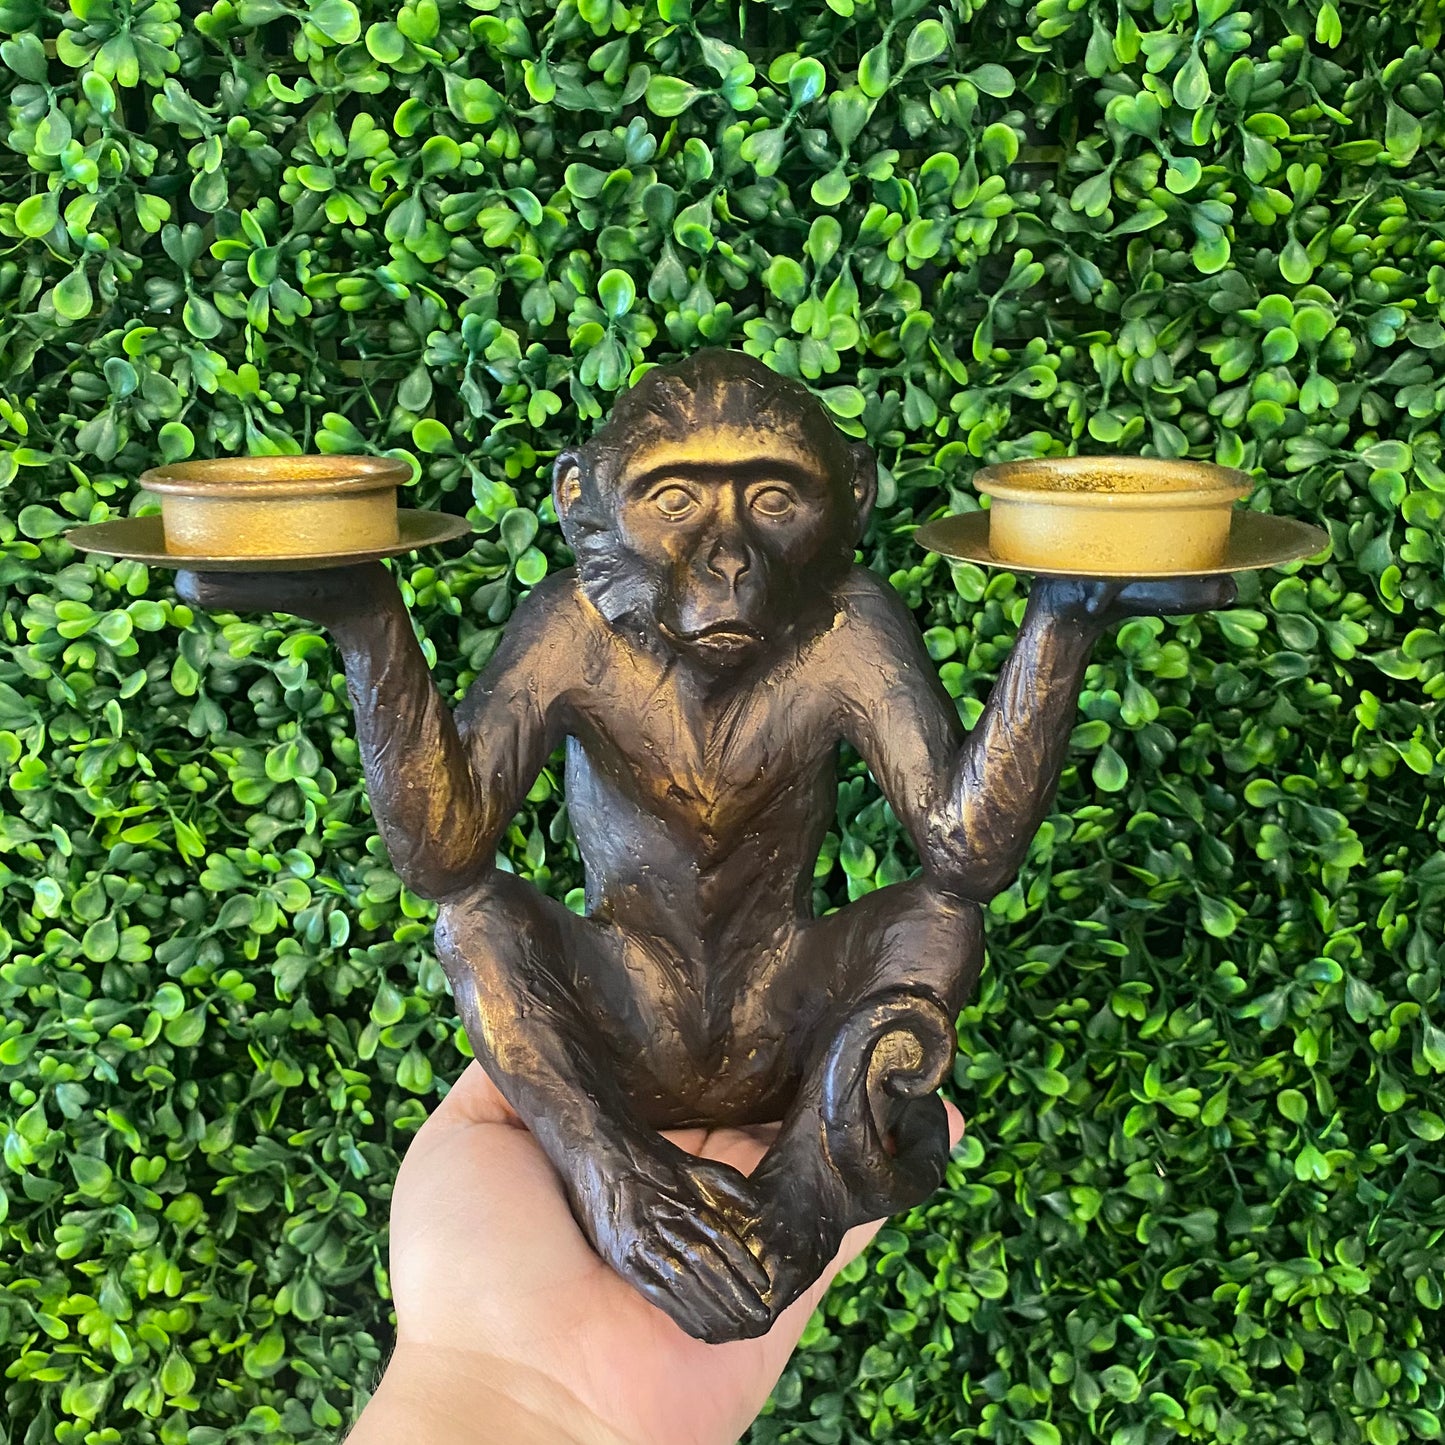 Monkey candle holder